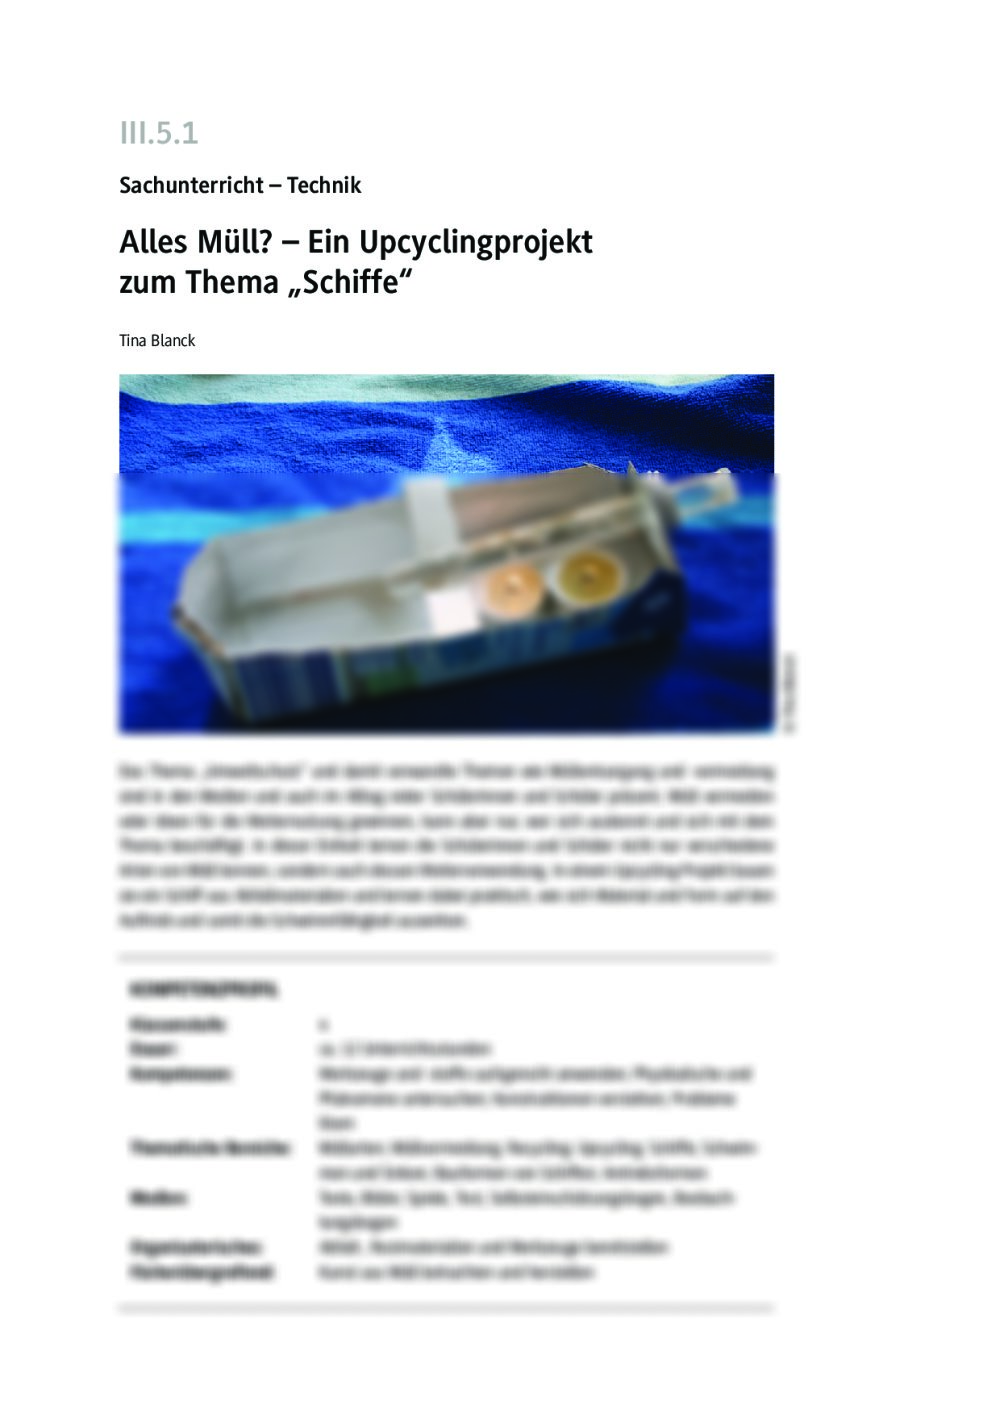 Ein Upcyclingprojekt zum Thema "Schiffe" - Seite 1